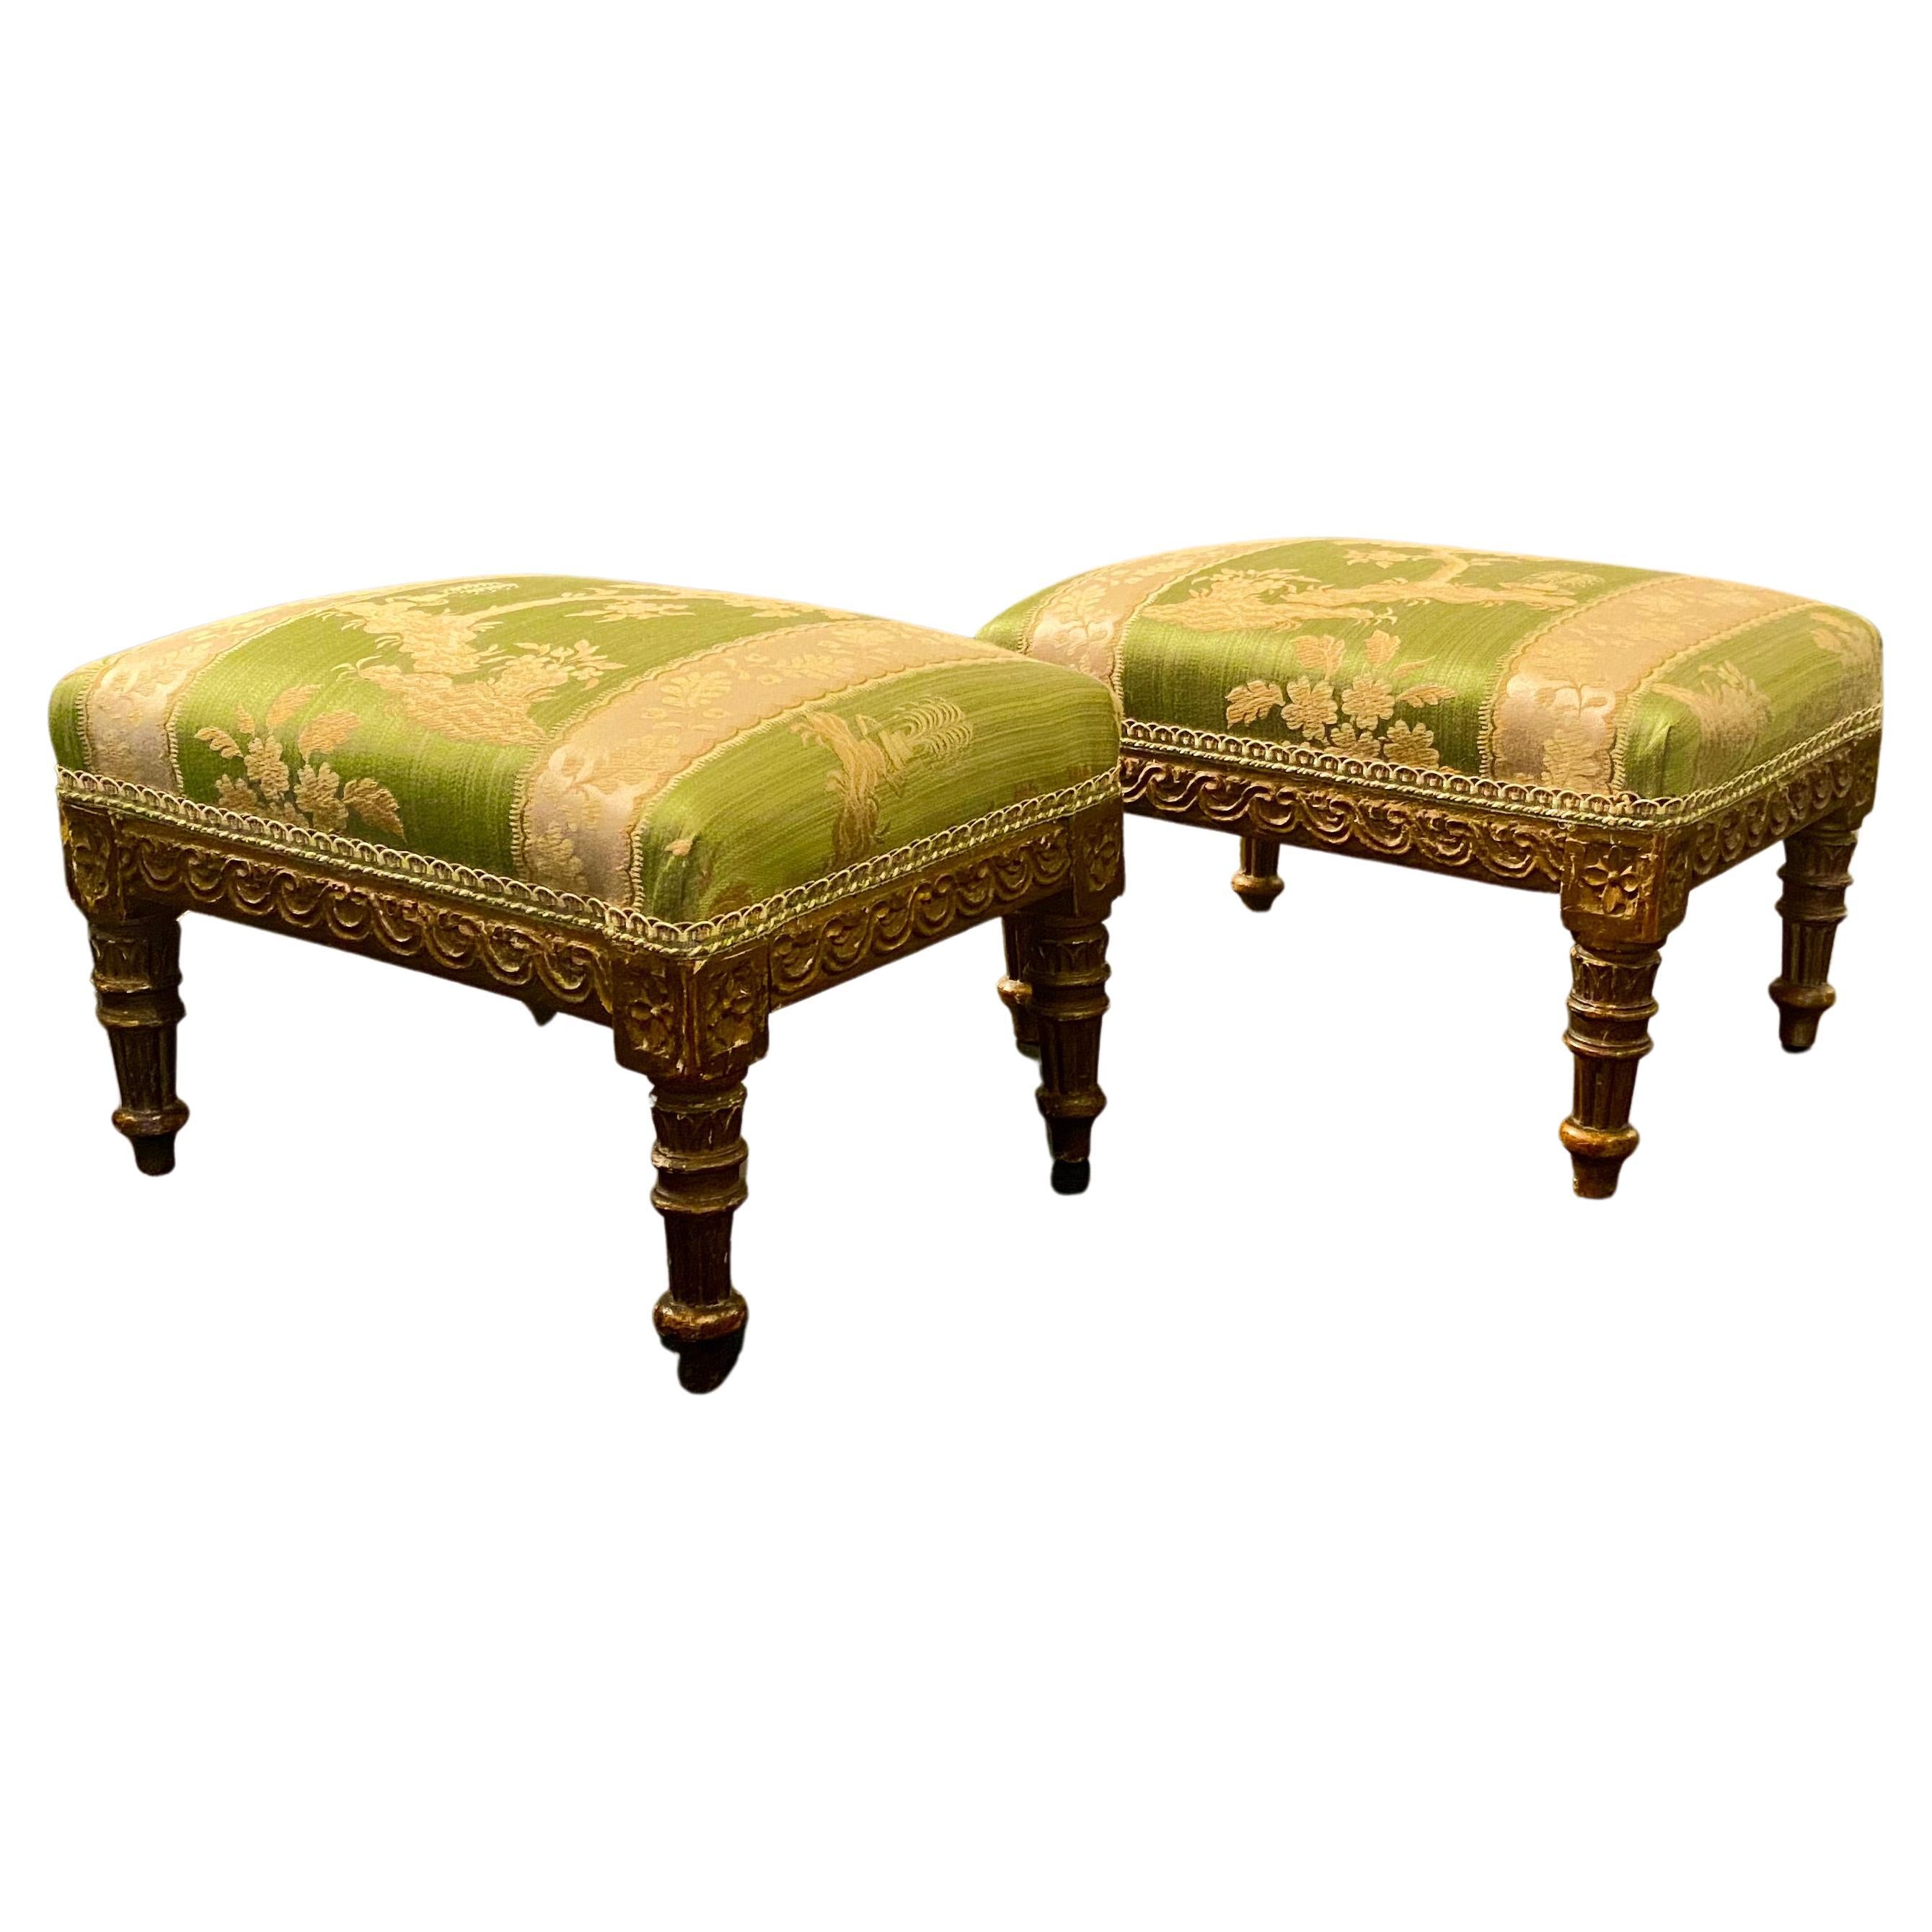 Tabourets sur pied en bois doré de style Louis XVI français, tapisserie en damas de soie vert en vente